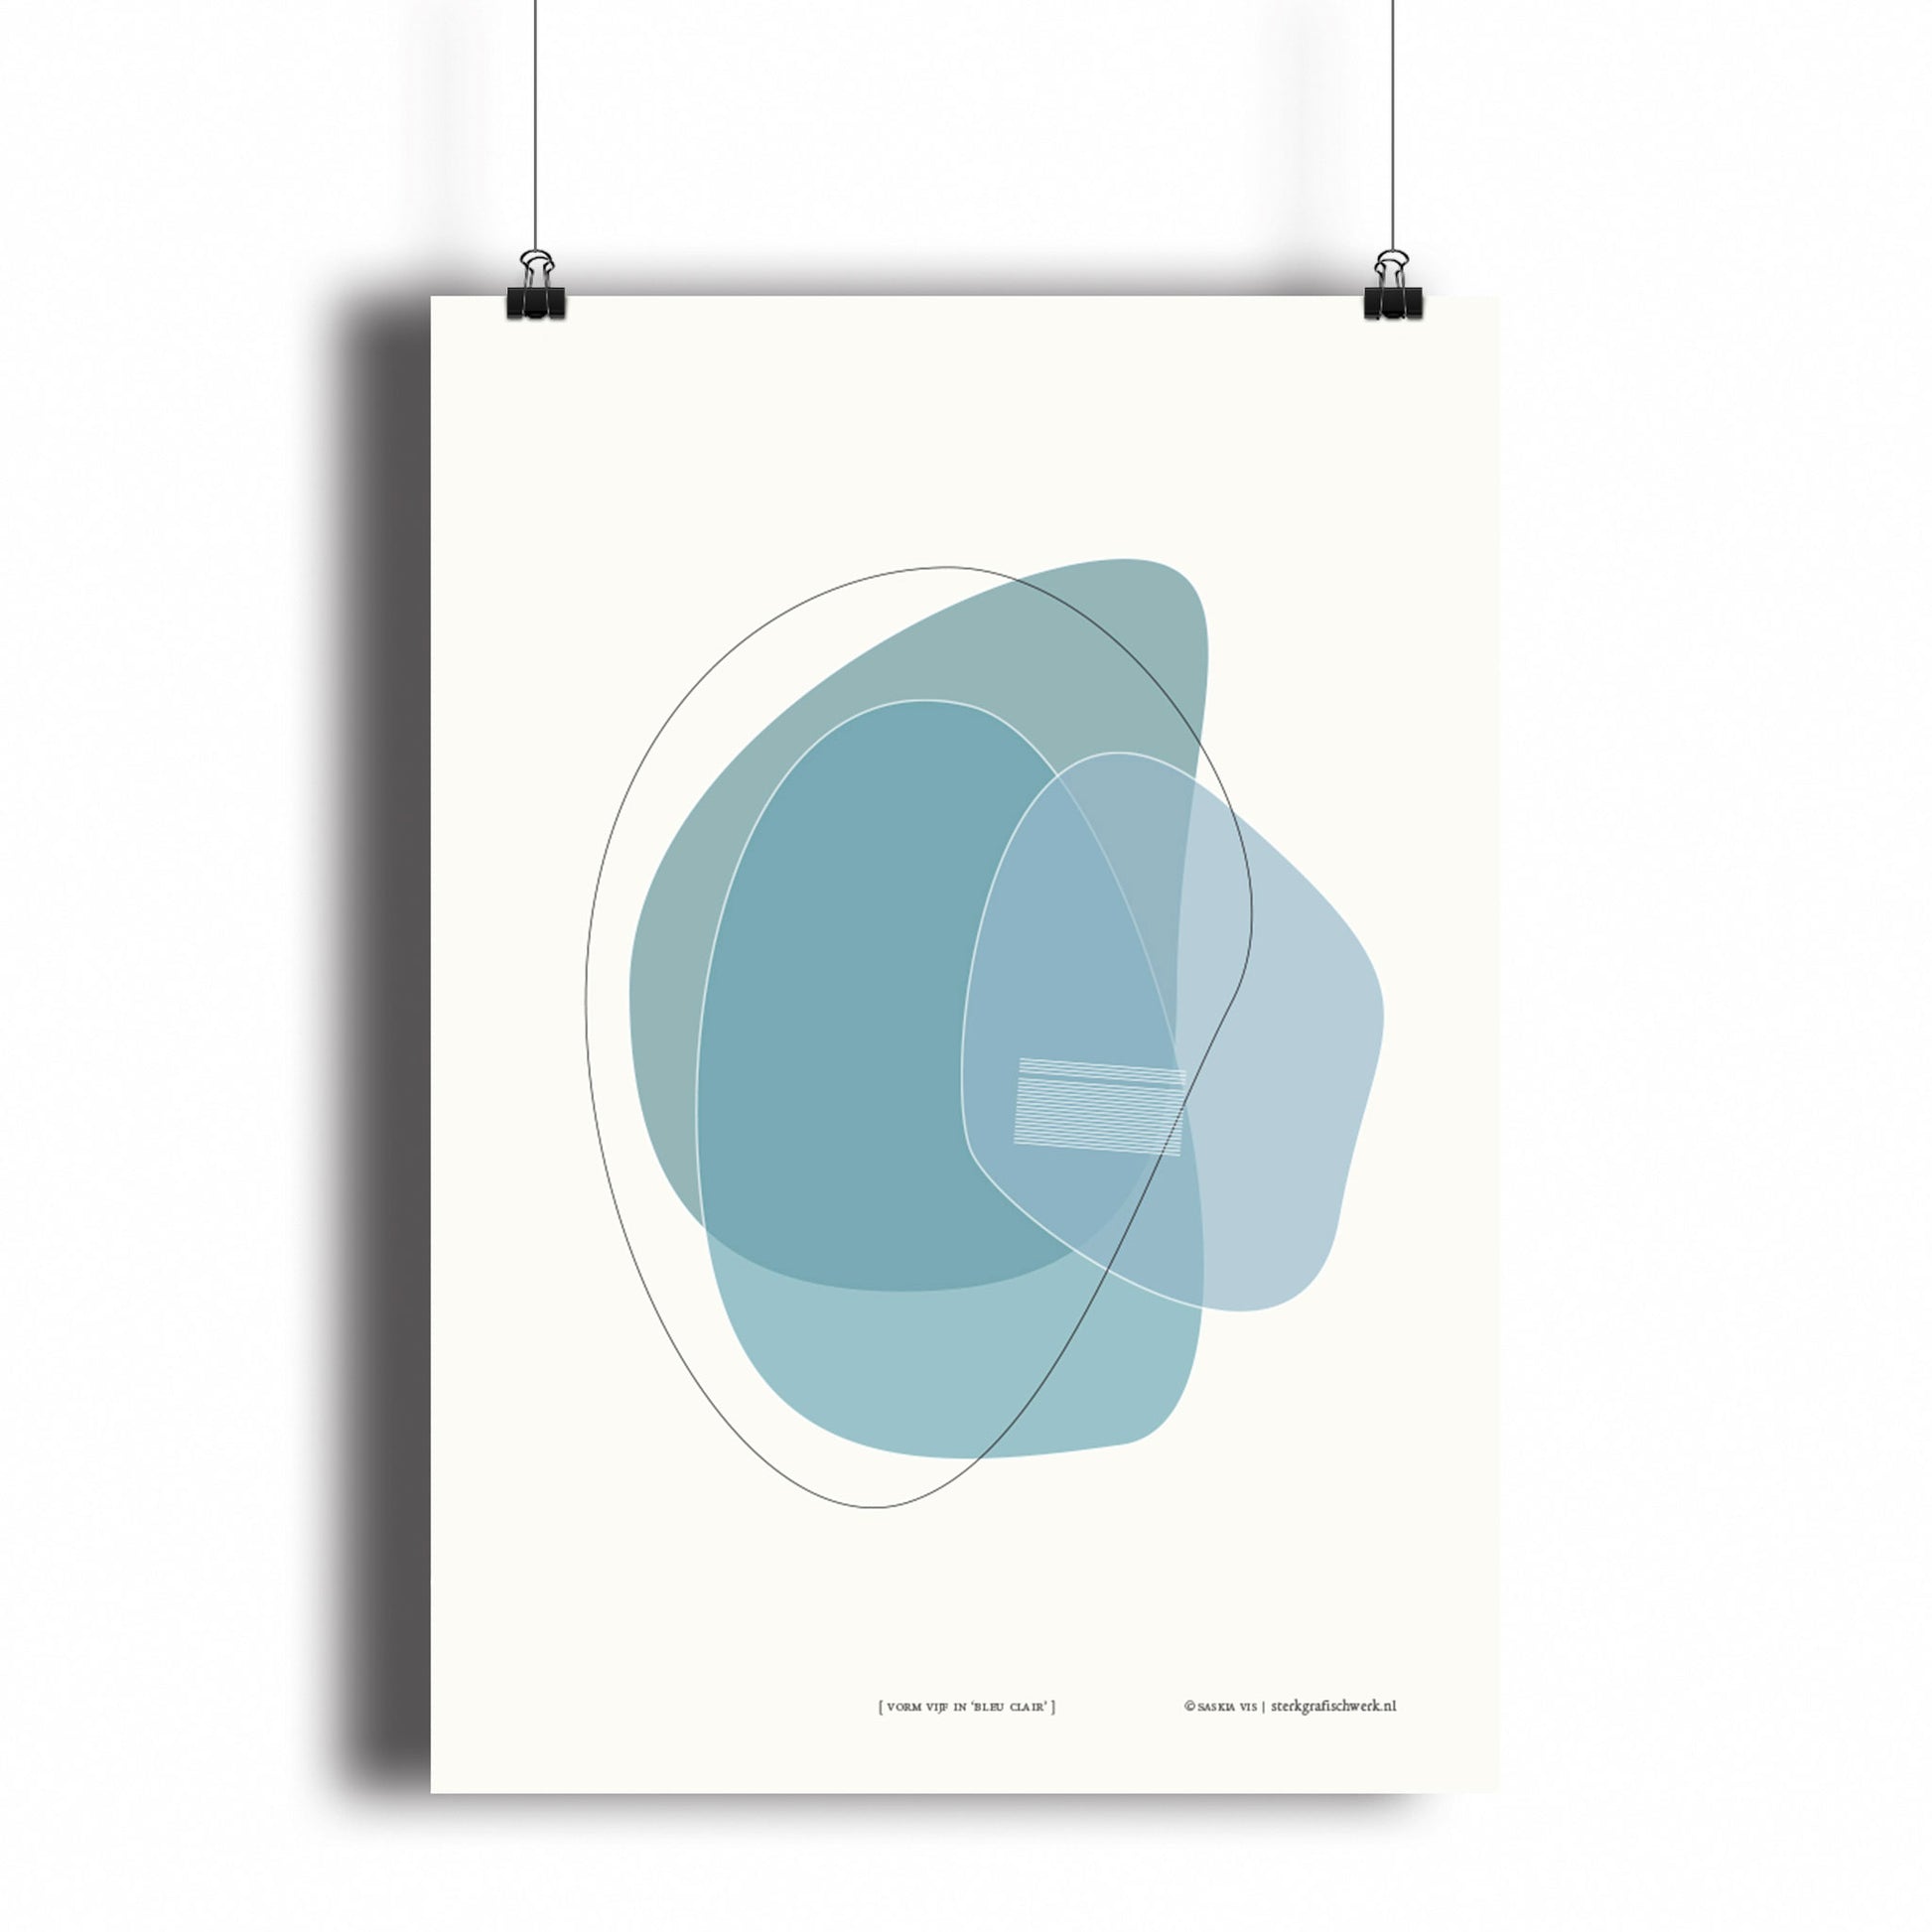 Productafbeelding, poster "vorm vijf in blue clair", hangend aan een witte wand, een overzichtsfoto